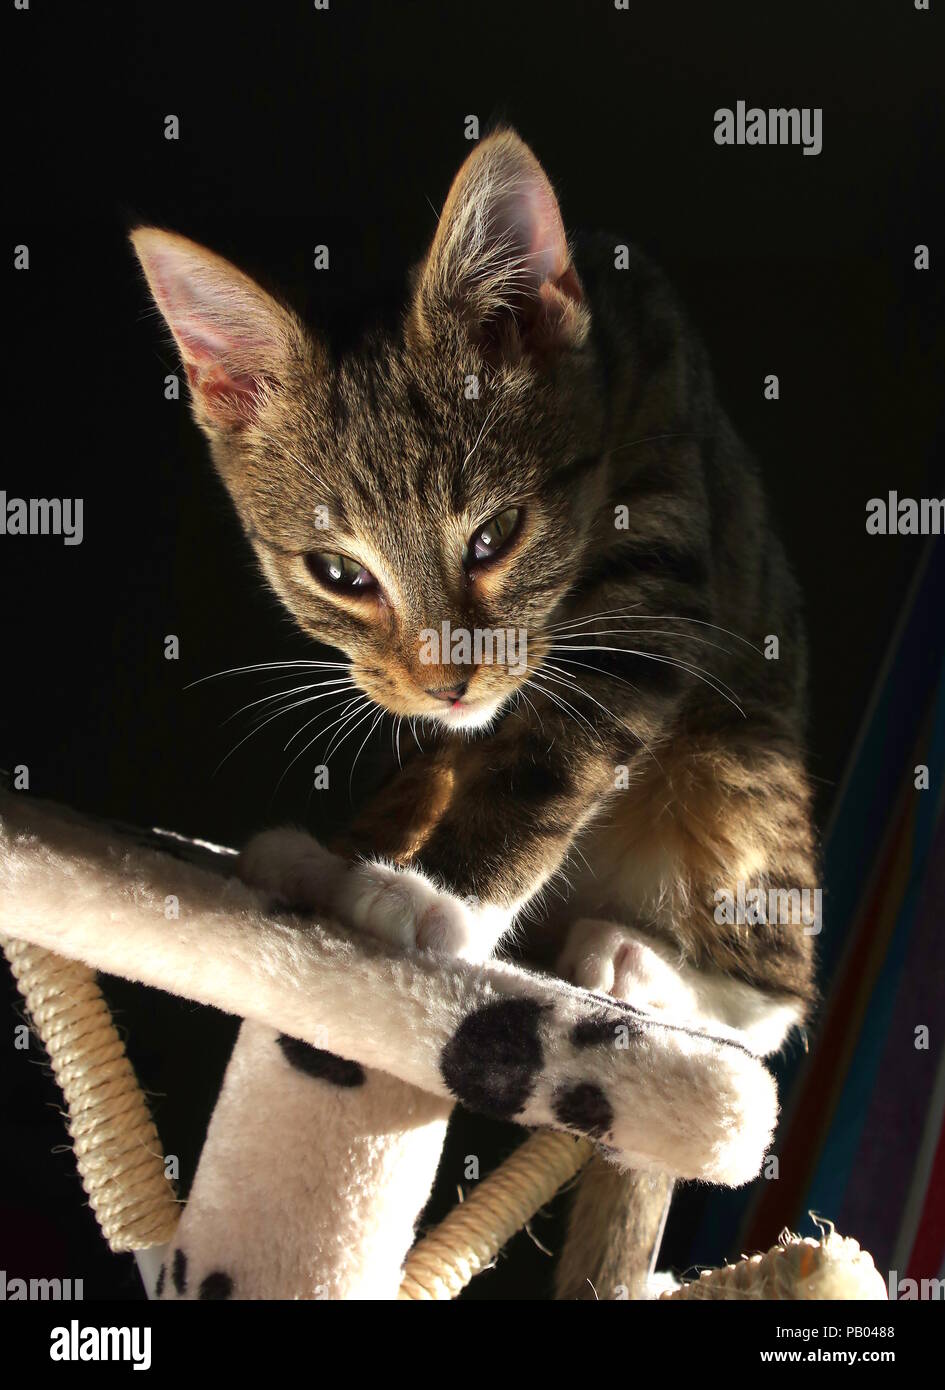 Tabby gattino e lo sfondo scuro Foto Stock